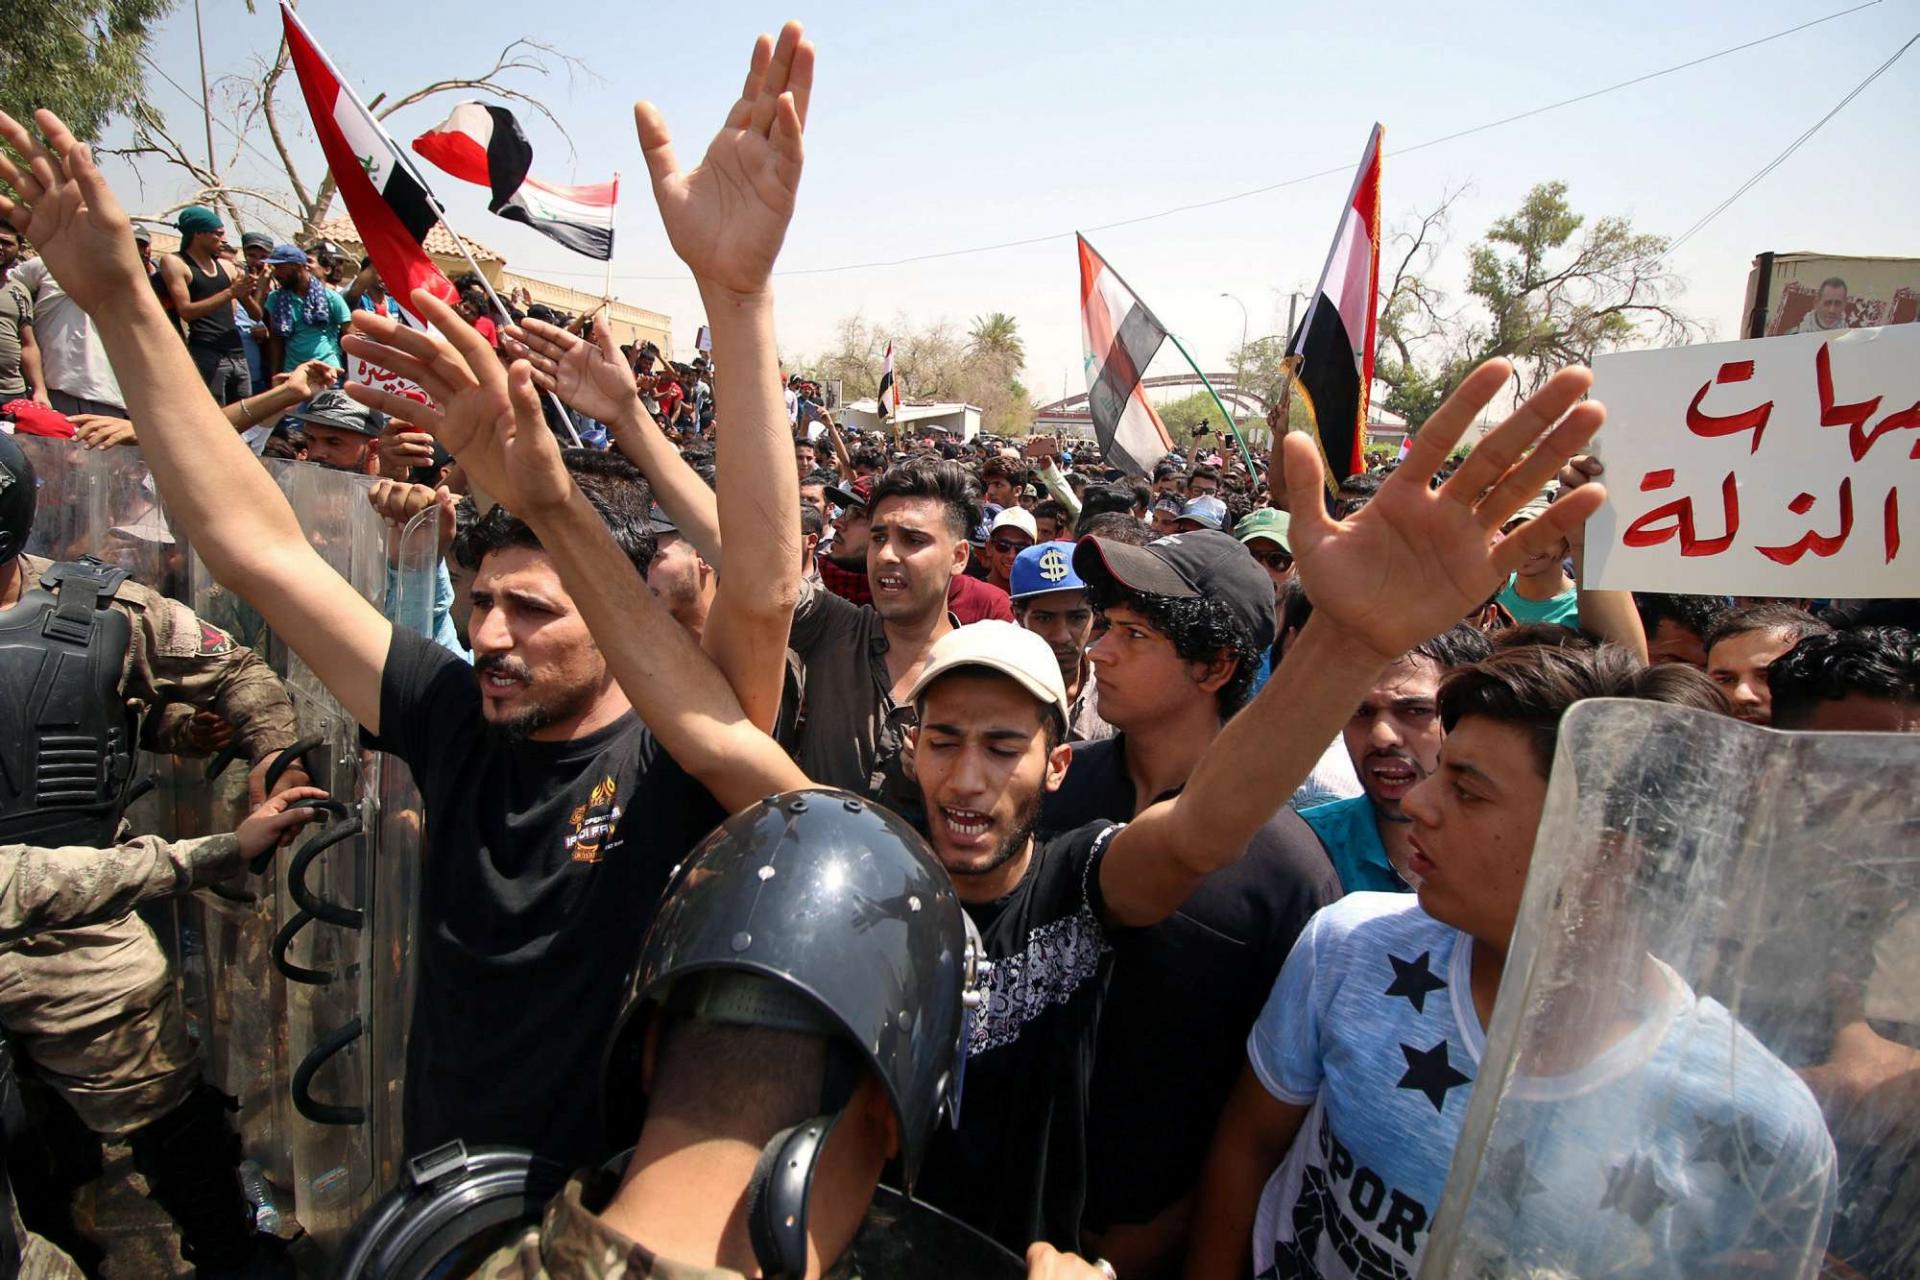 بالاسماء والتفاصيل.. رويترز تكشف هوية قناصة الاحتجاجات في العراق